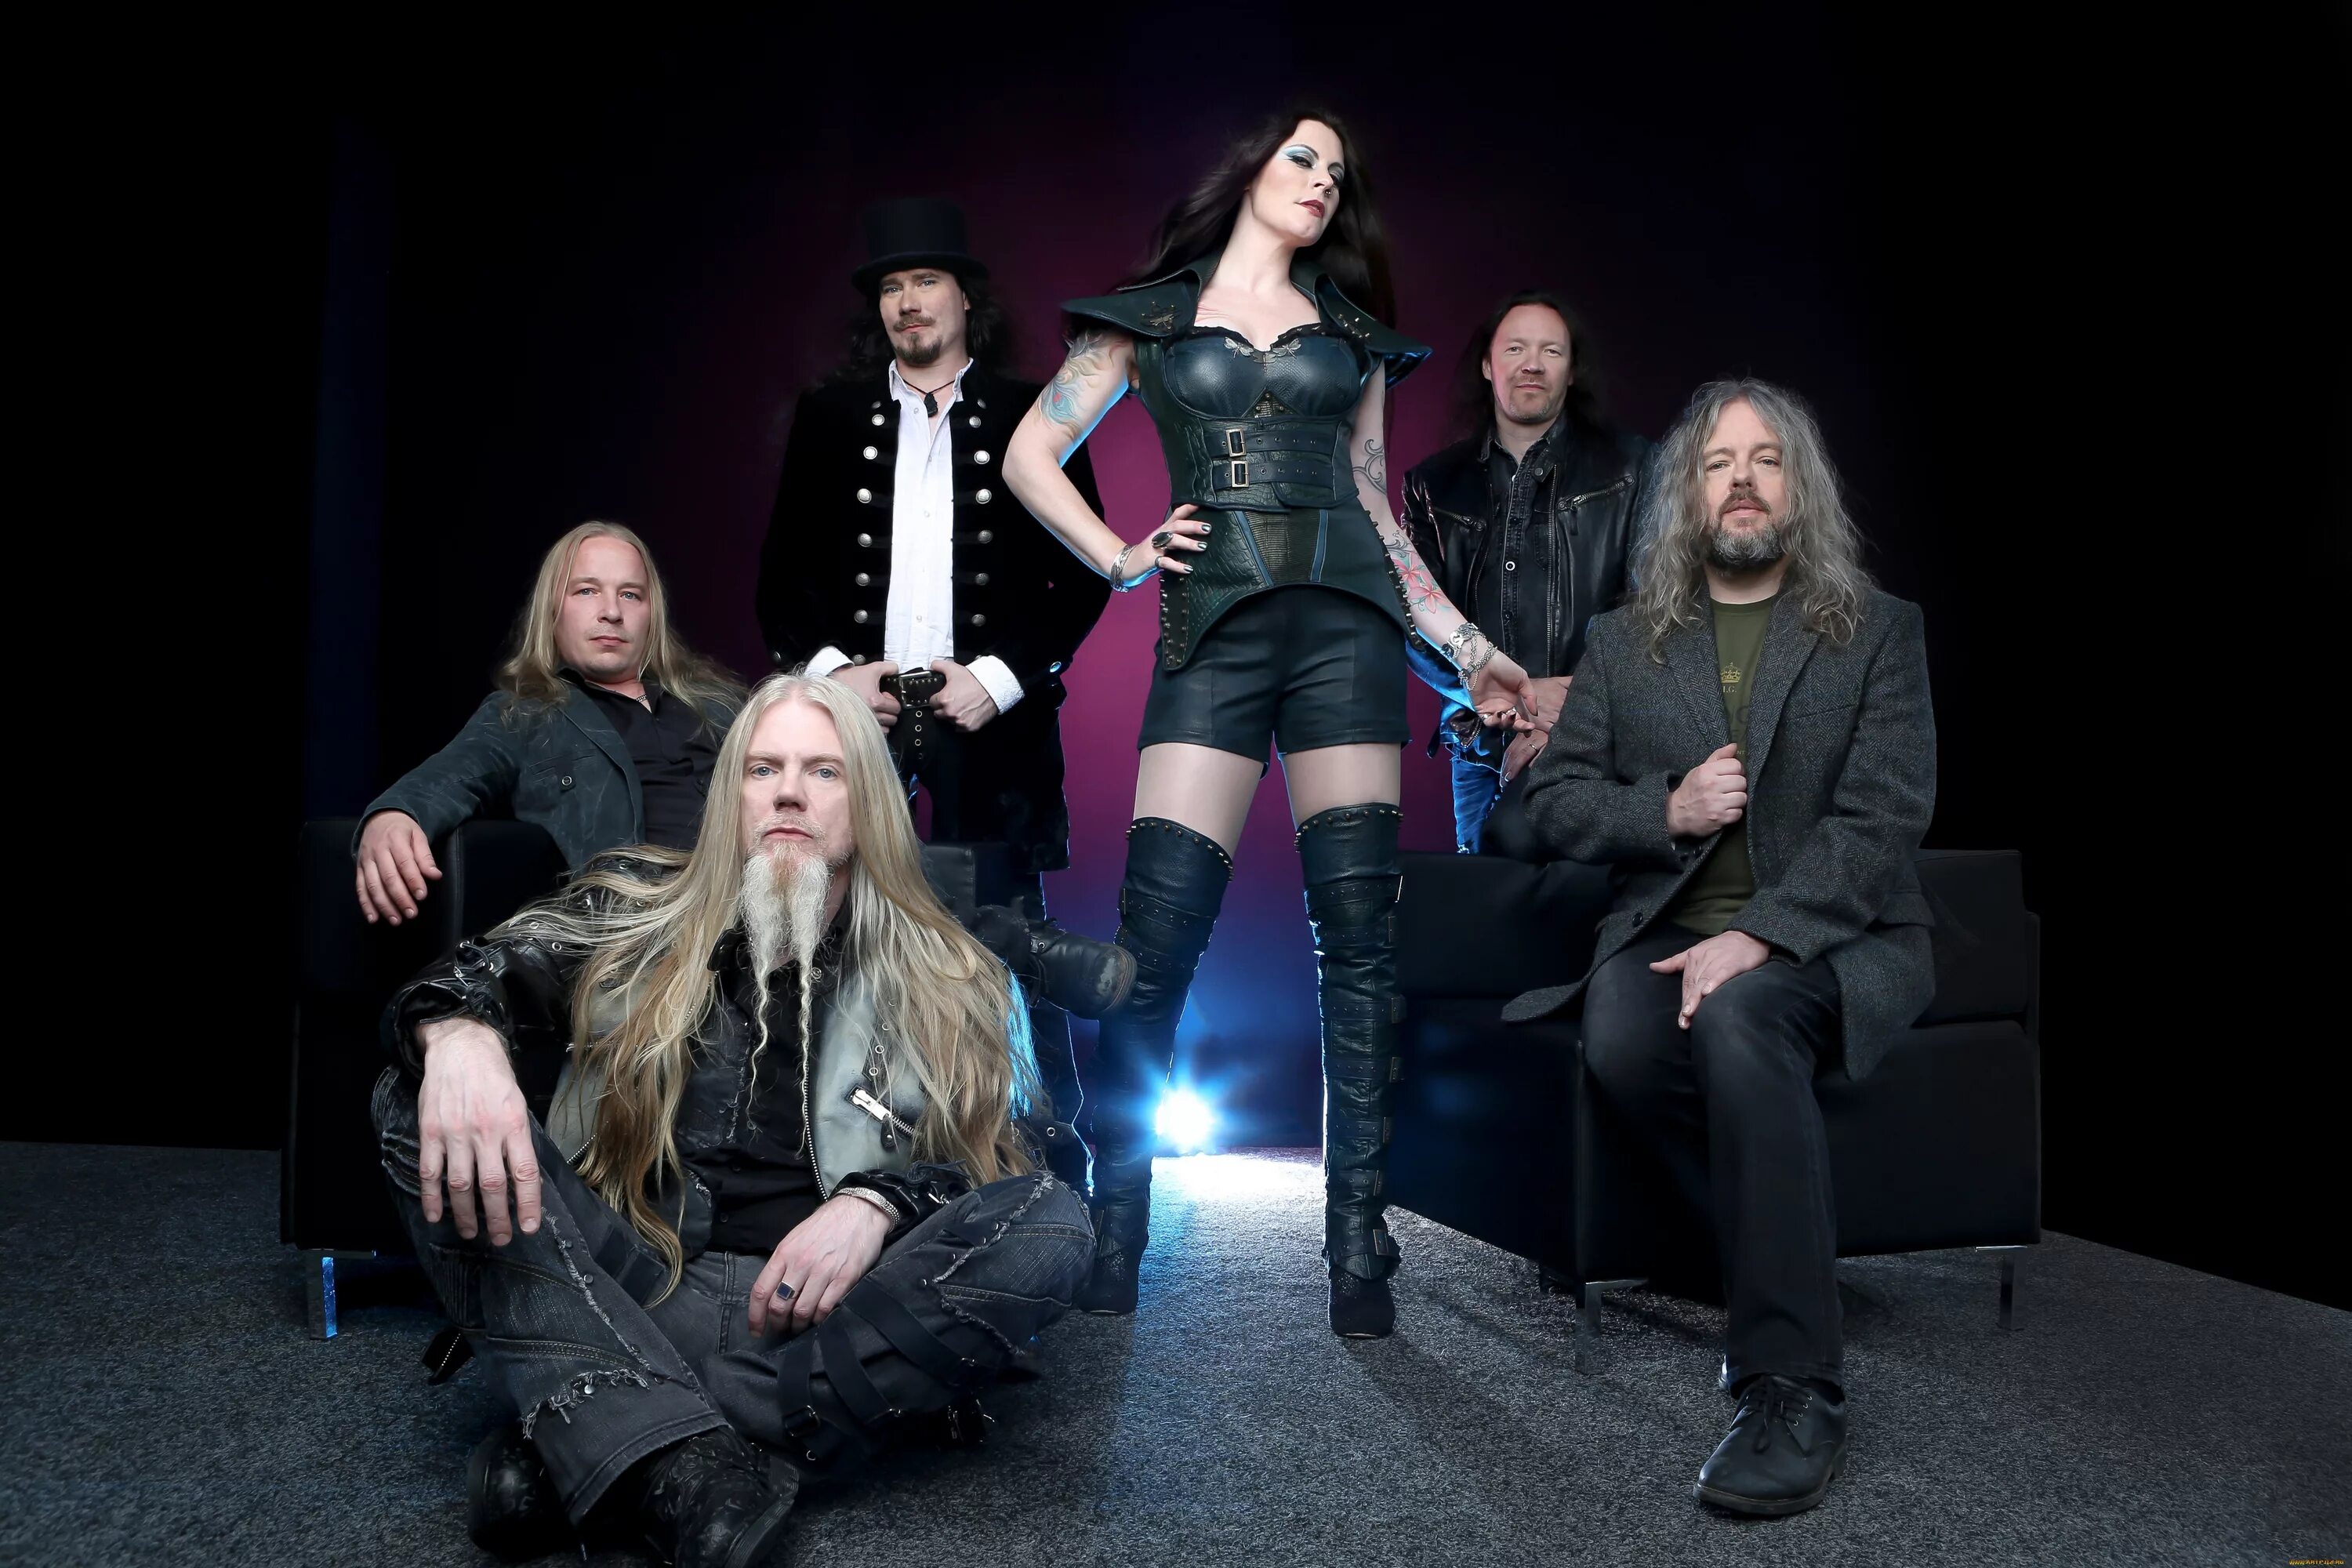 Группа найтвиш 2022. Группа Nightwish 2020. Группа Nightwish 2021. Финская группа найтвиш. Финские метал группы